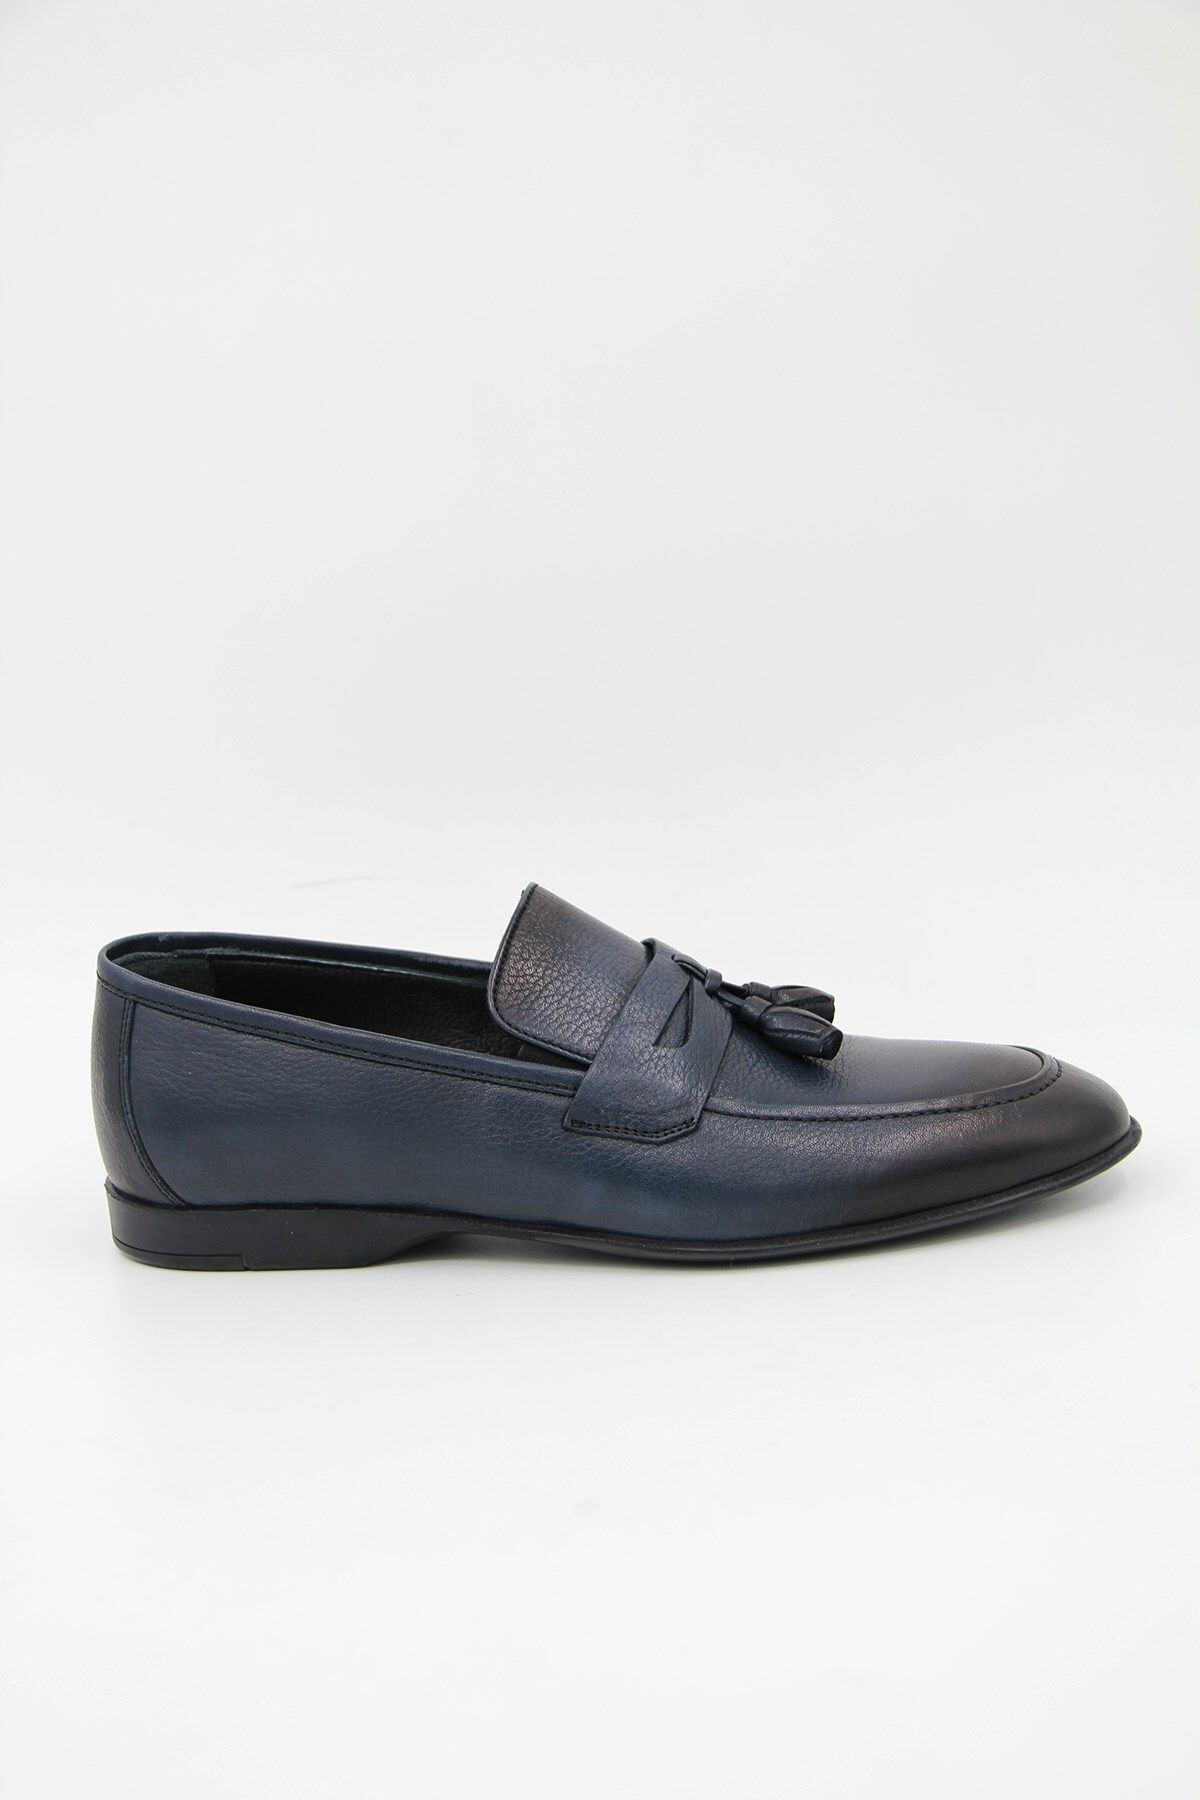 LUCIANO BELLINI 700-1 Erkek Klasik Ayakkabı - Lacivert